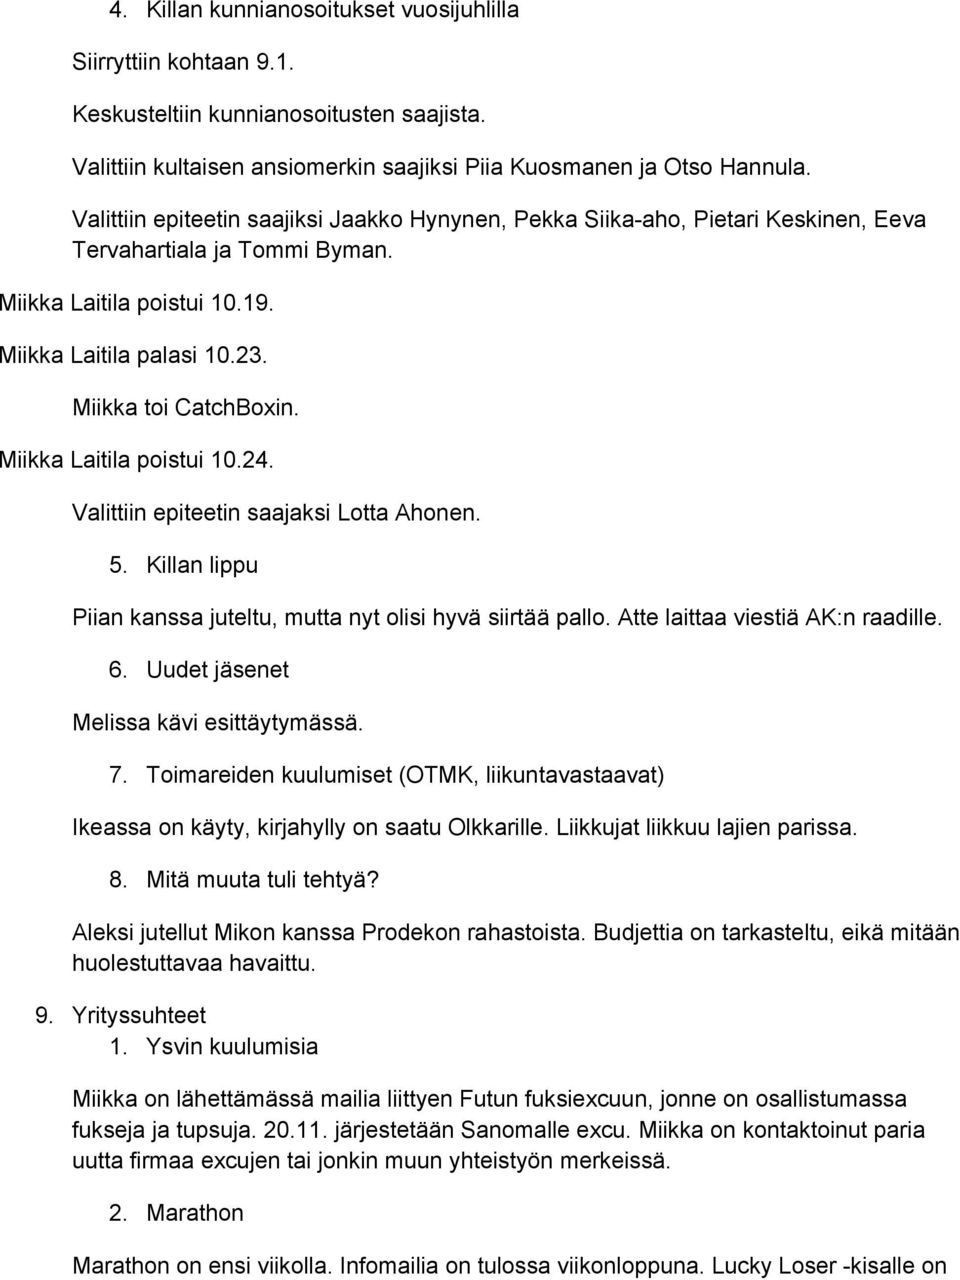 Miikka Laitila poistui 10.24. Valittiin epiteetin saajaksi Lotta Ahonen. 5. Killan lippu Piian kanssa juteltu, mutta nyt olisi hyvä siirtää pallo. Atte laittaa viestiä AK:n raadille. 6.